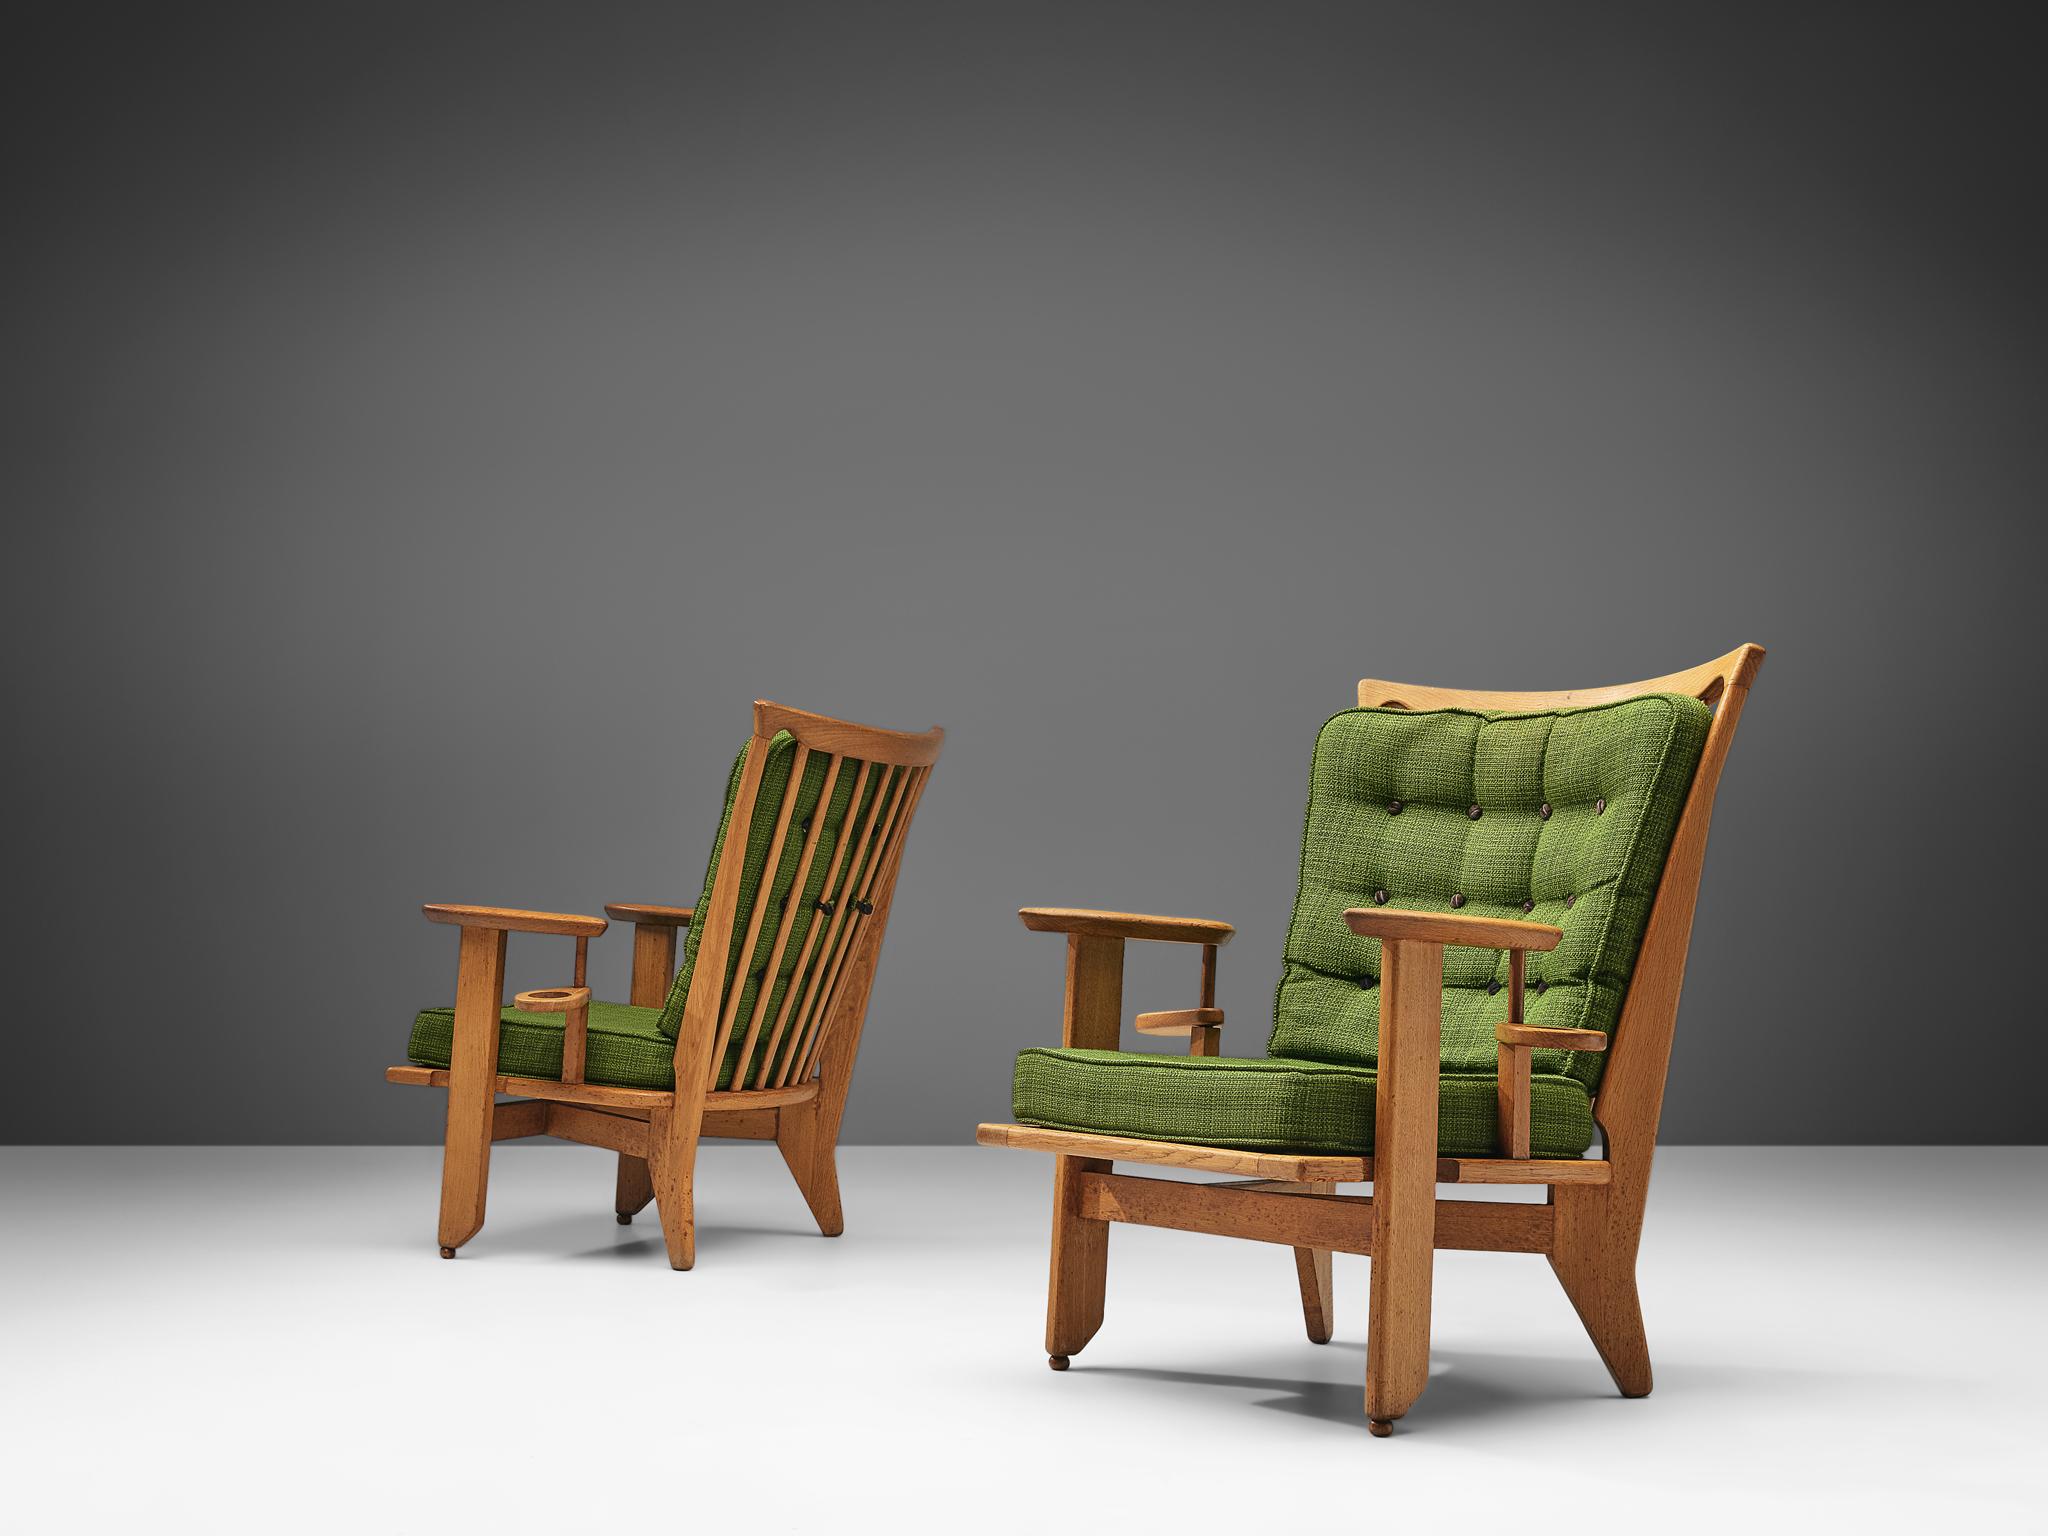 Guillerme et Chambron für Votre Maison, Paar Loungesessel, Stoff, Eiche, Frankreich, 1960er Jahre

Das französische Designer-Duo ist bekannt für seine extrem hochwertigen Möbel aus massiver Eiche, von denen dieses Set ein weiteres gutes Beispiel